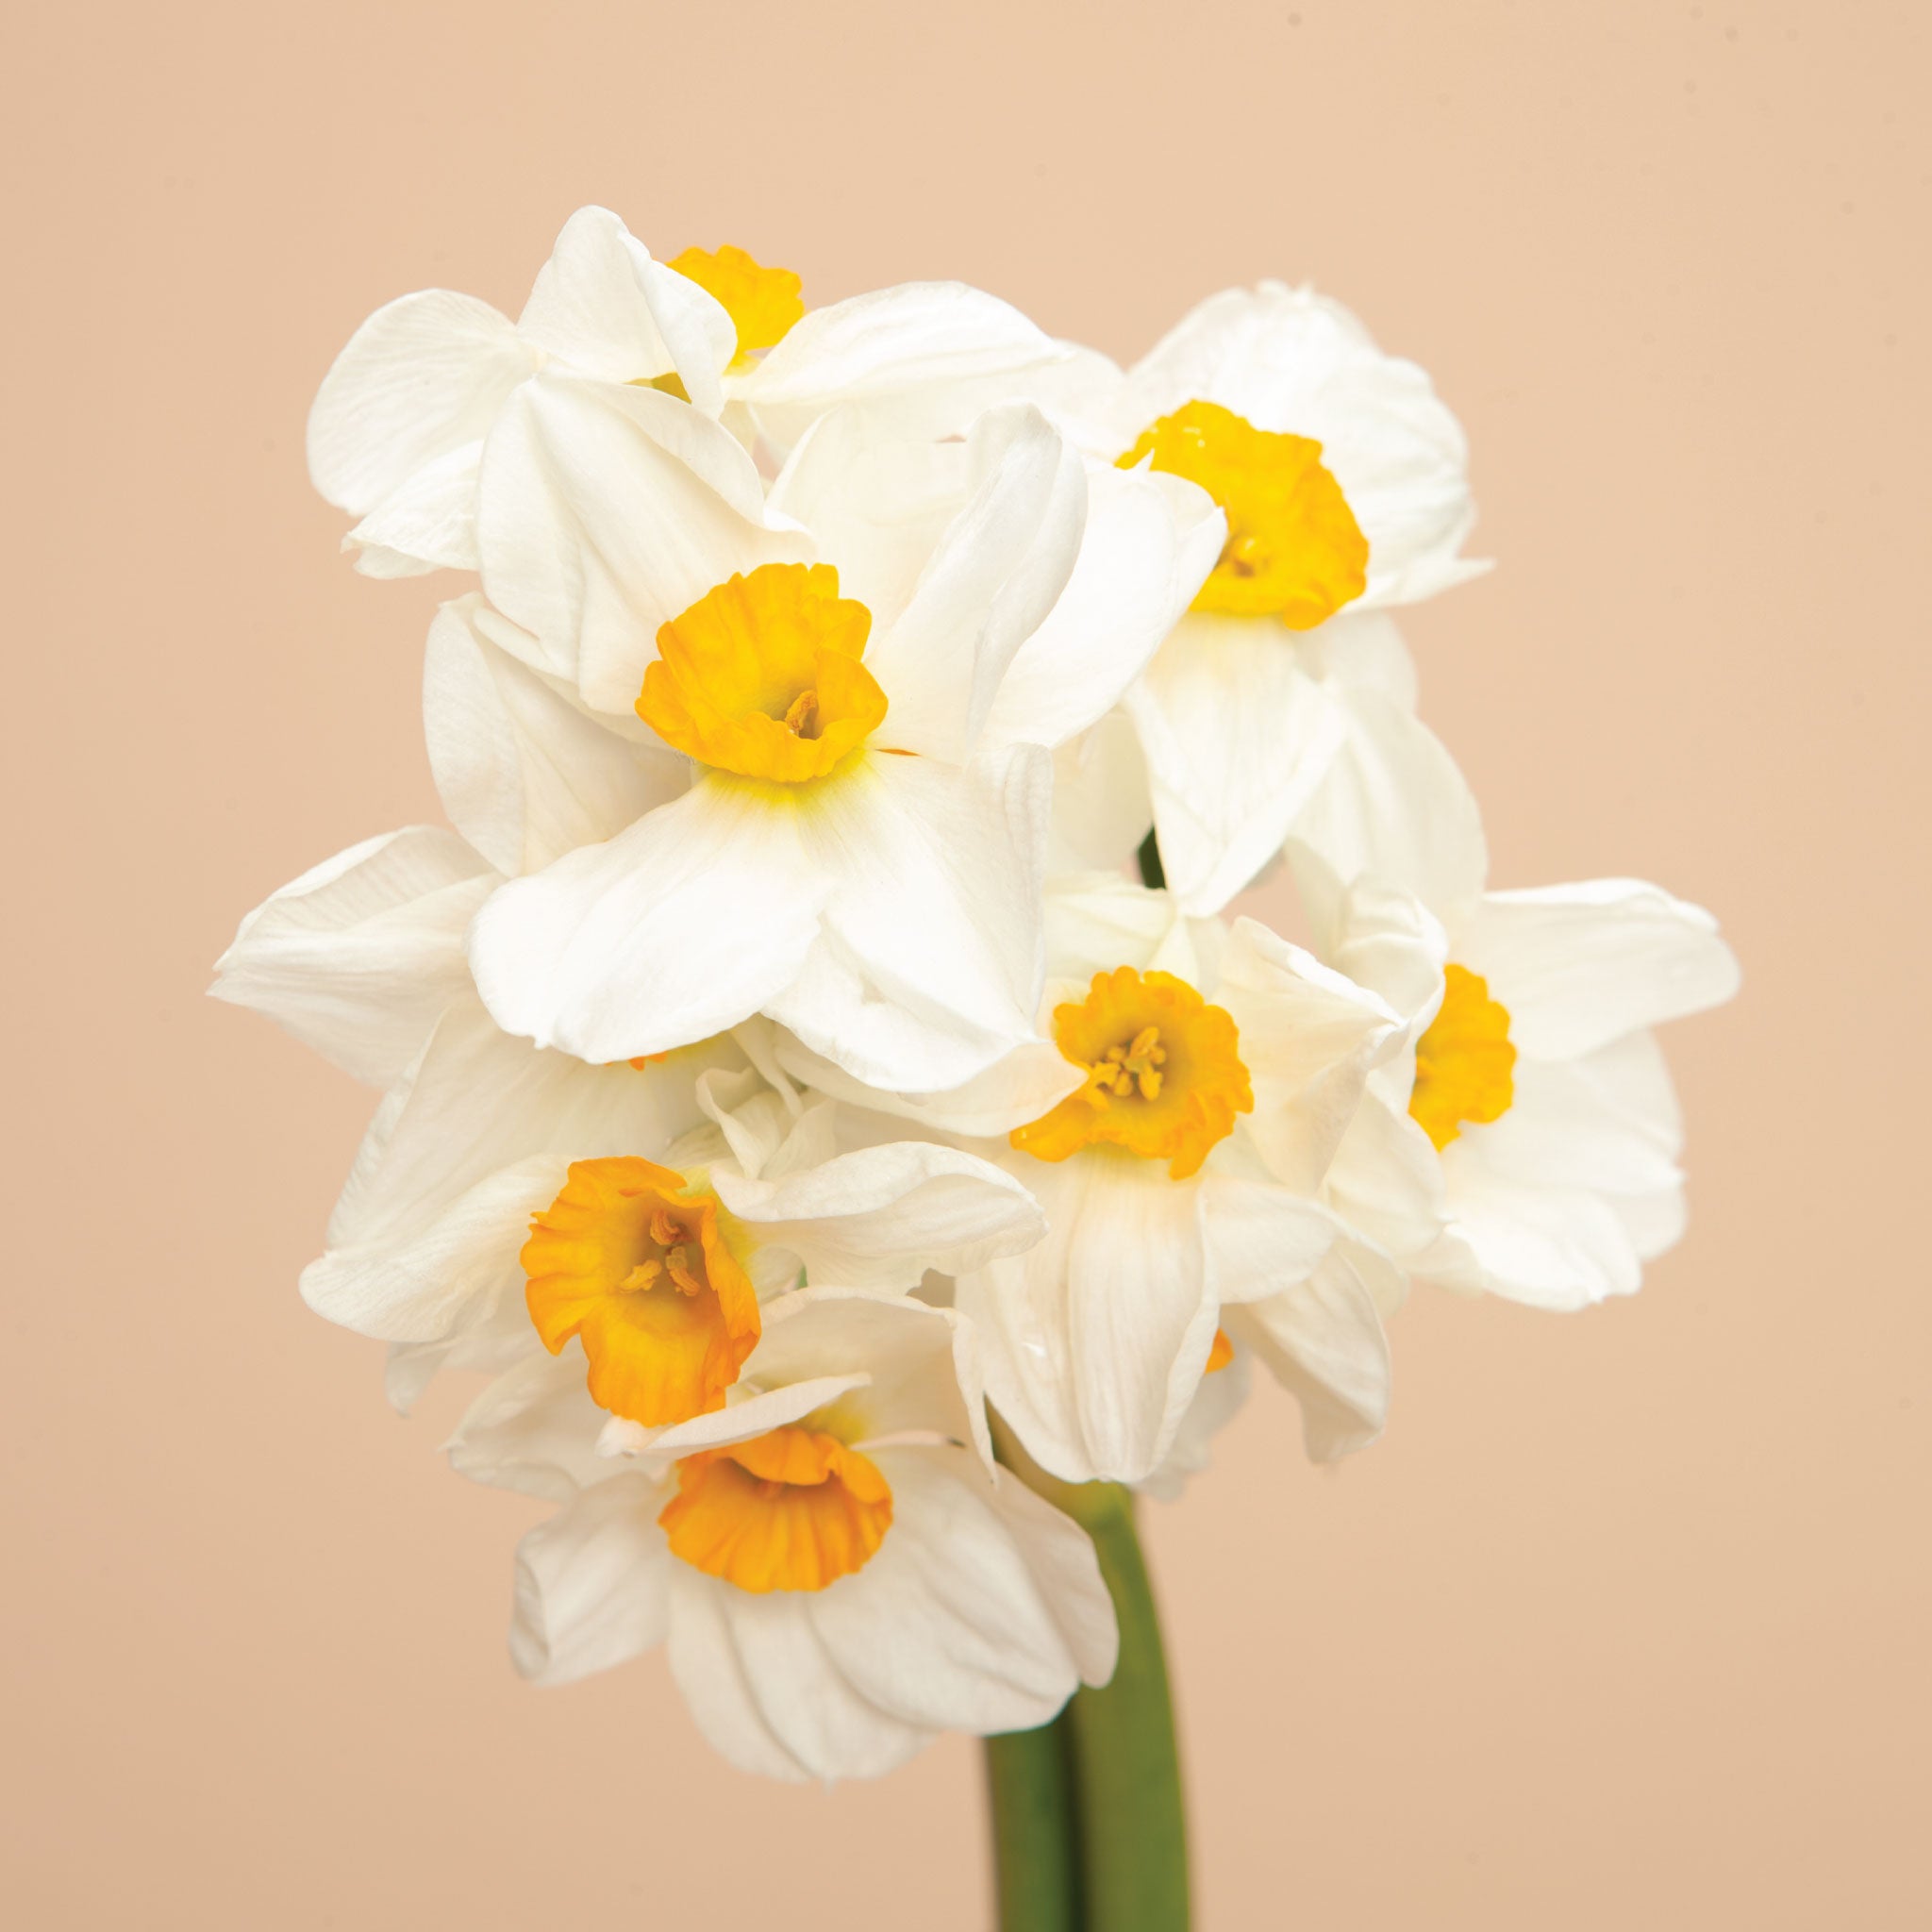 Minnow Daffodil Narcissus, Tulip World